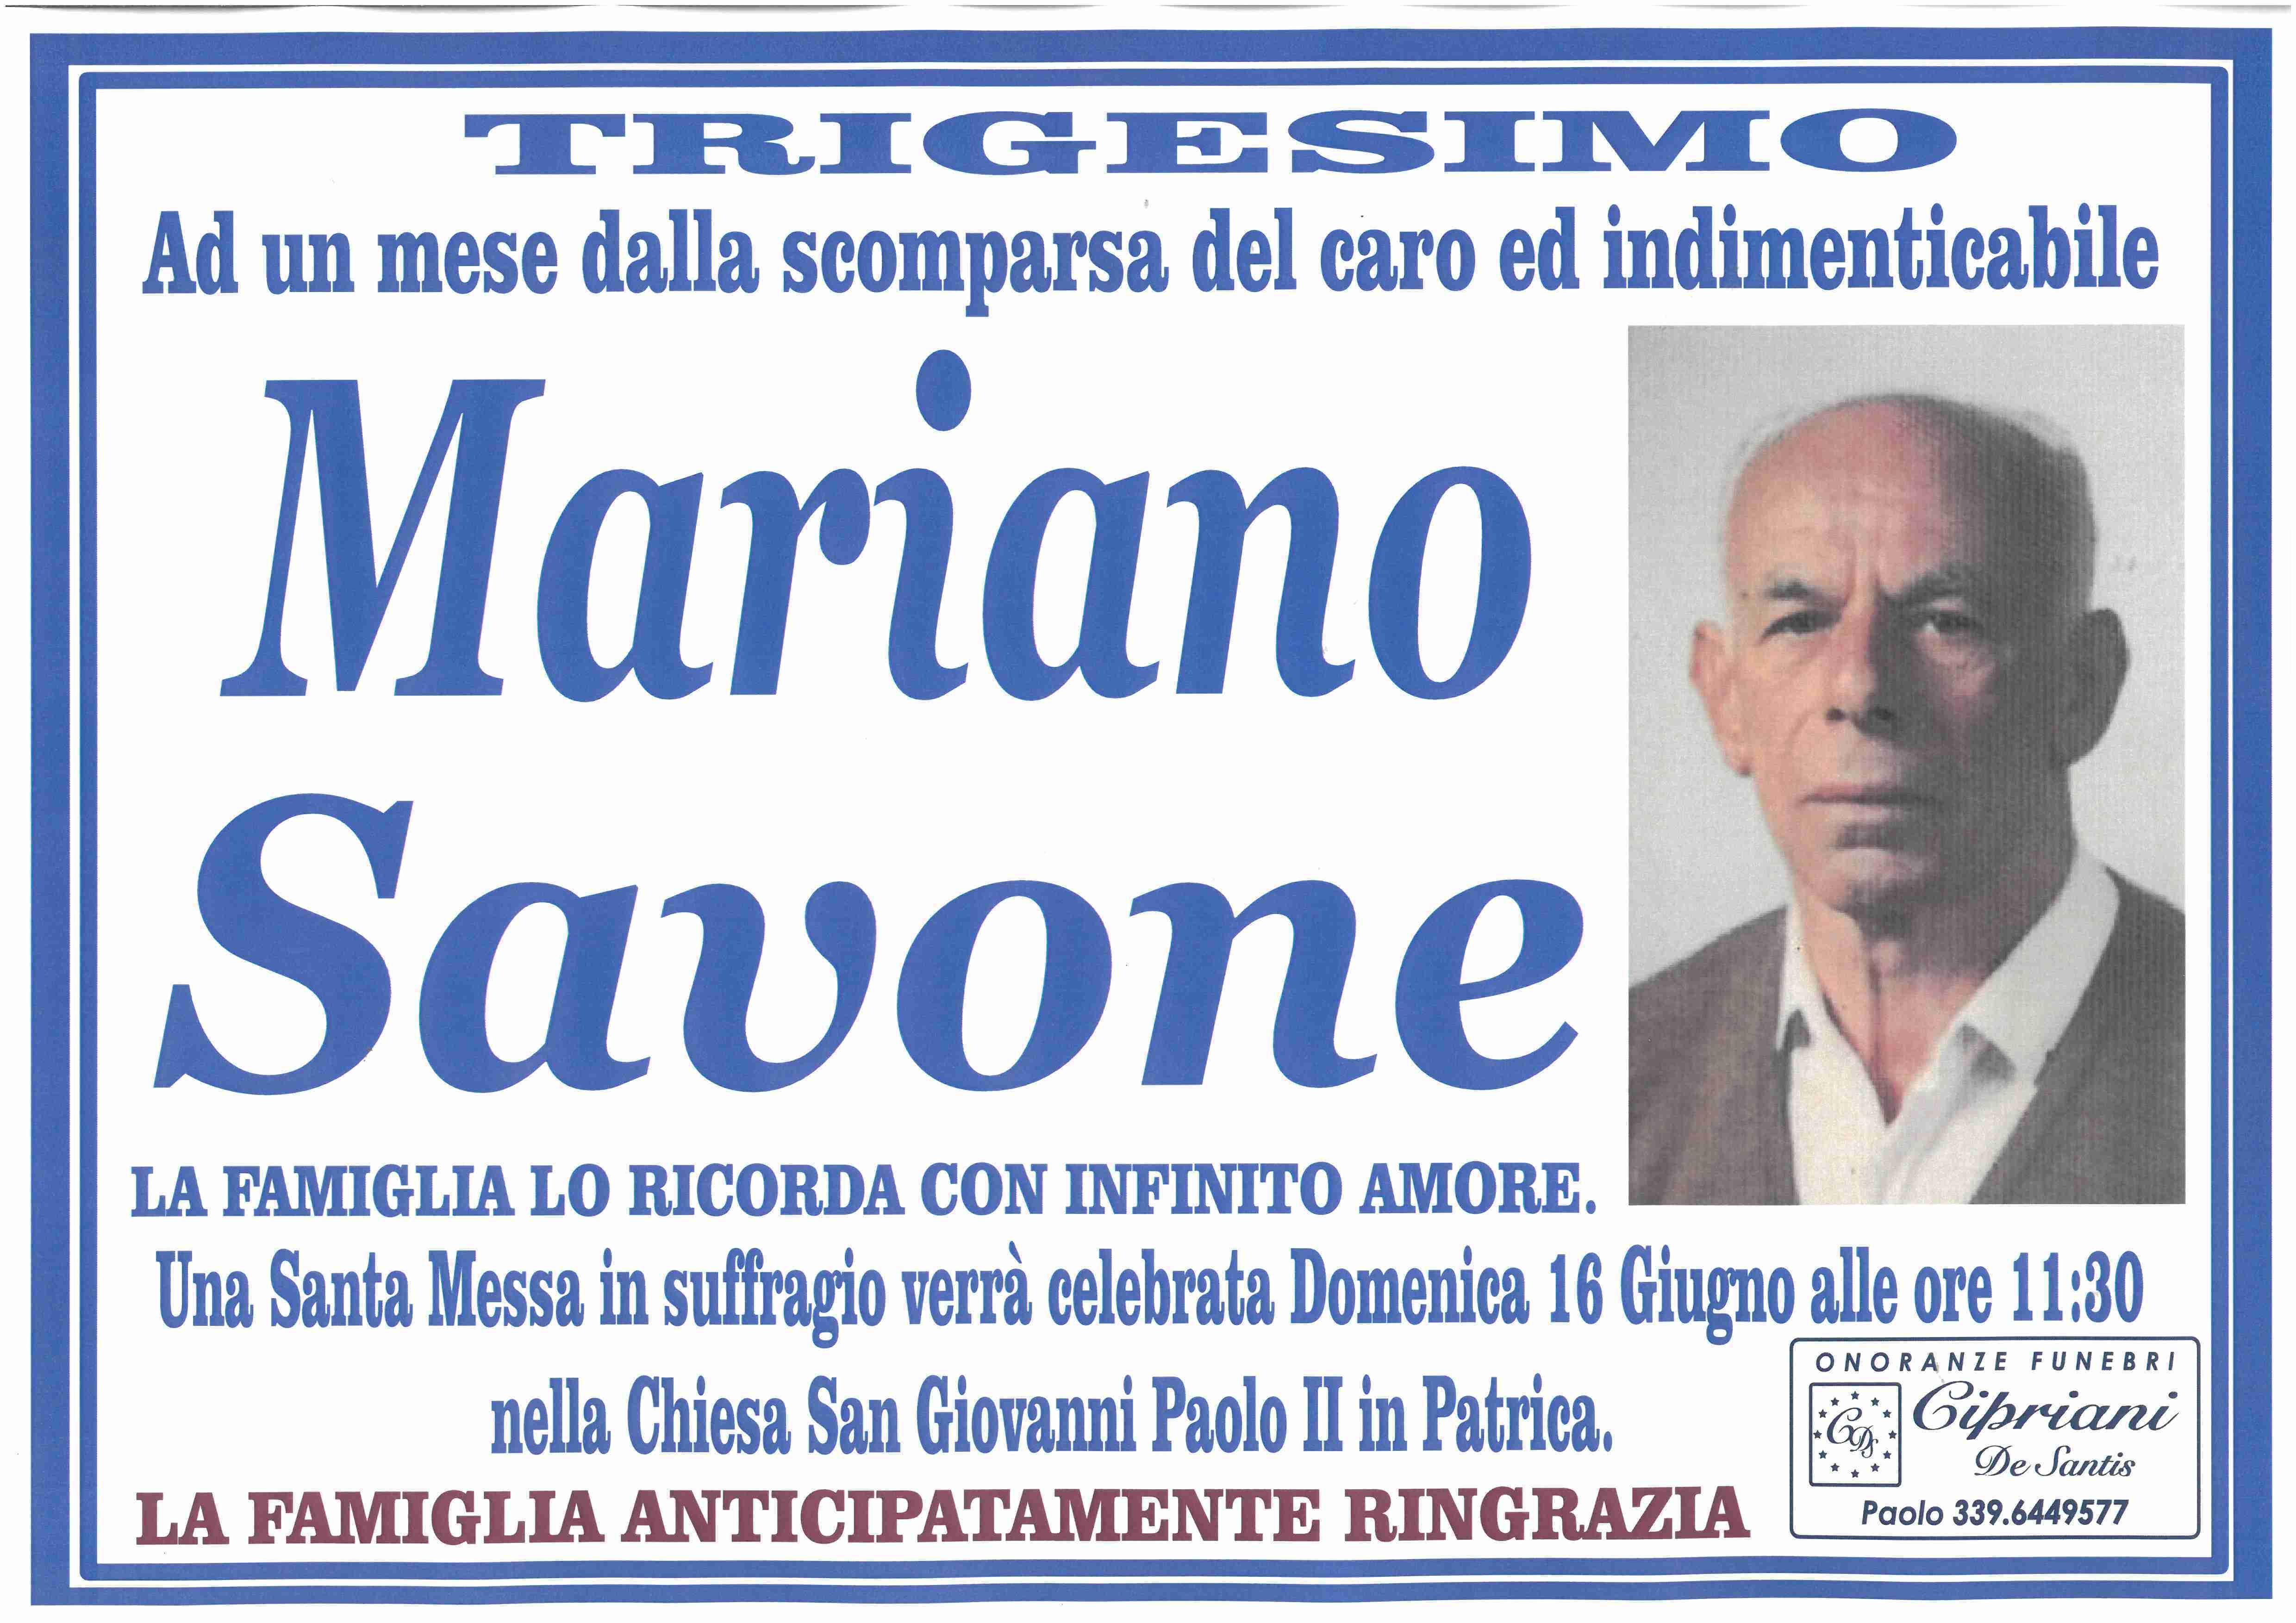 Mariano Savone